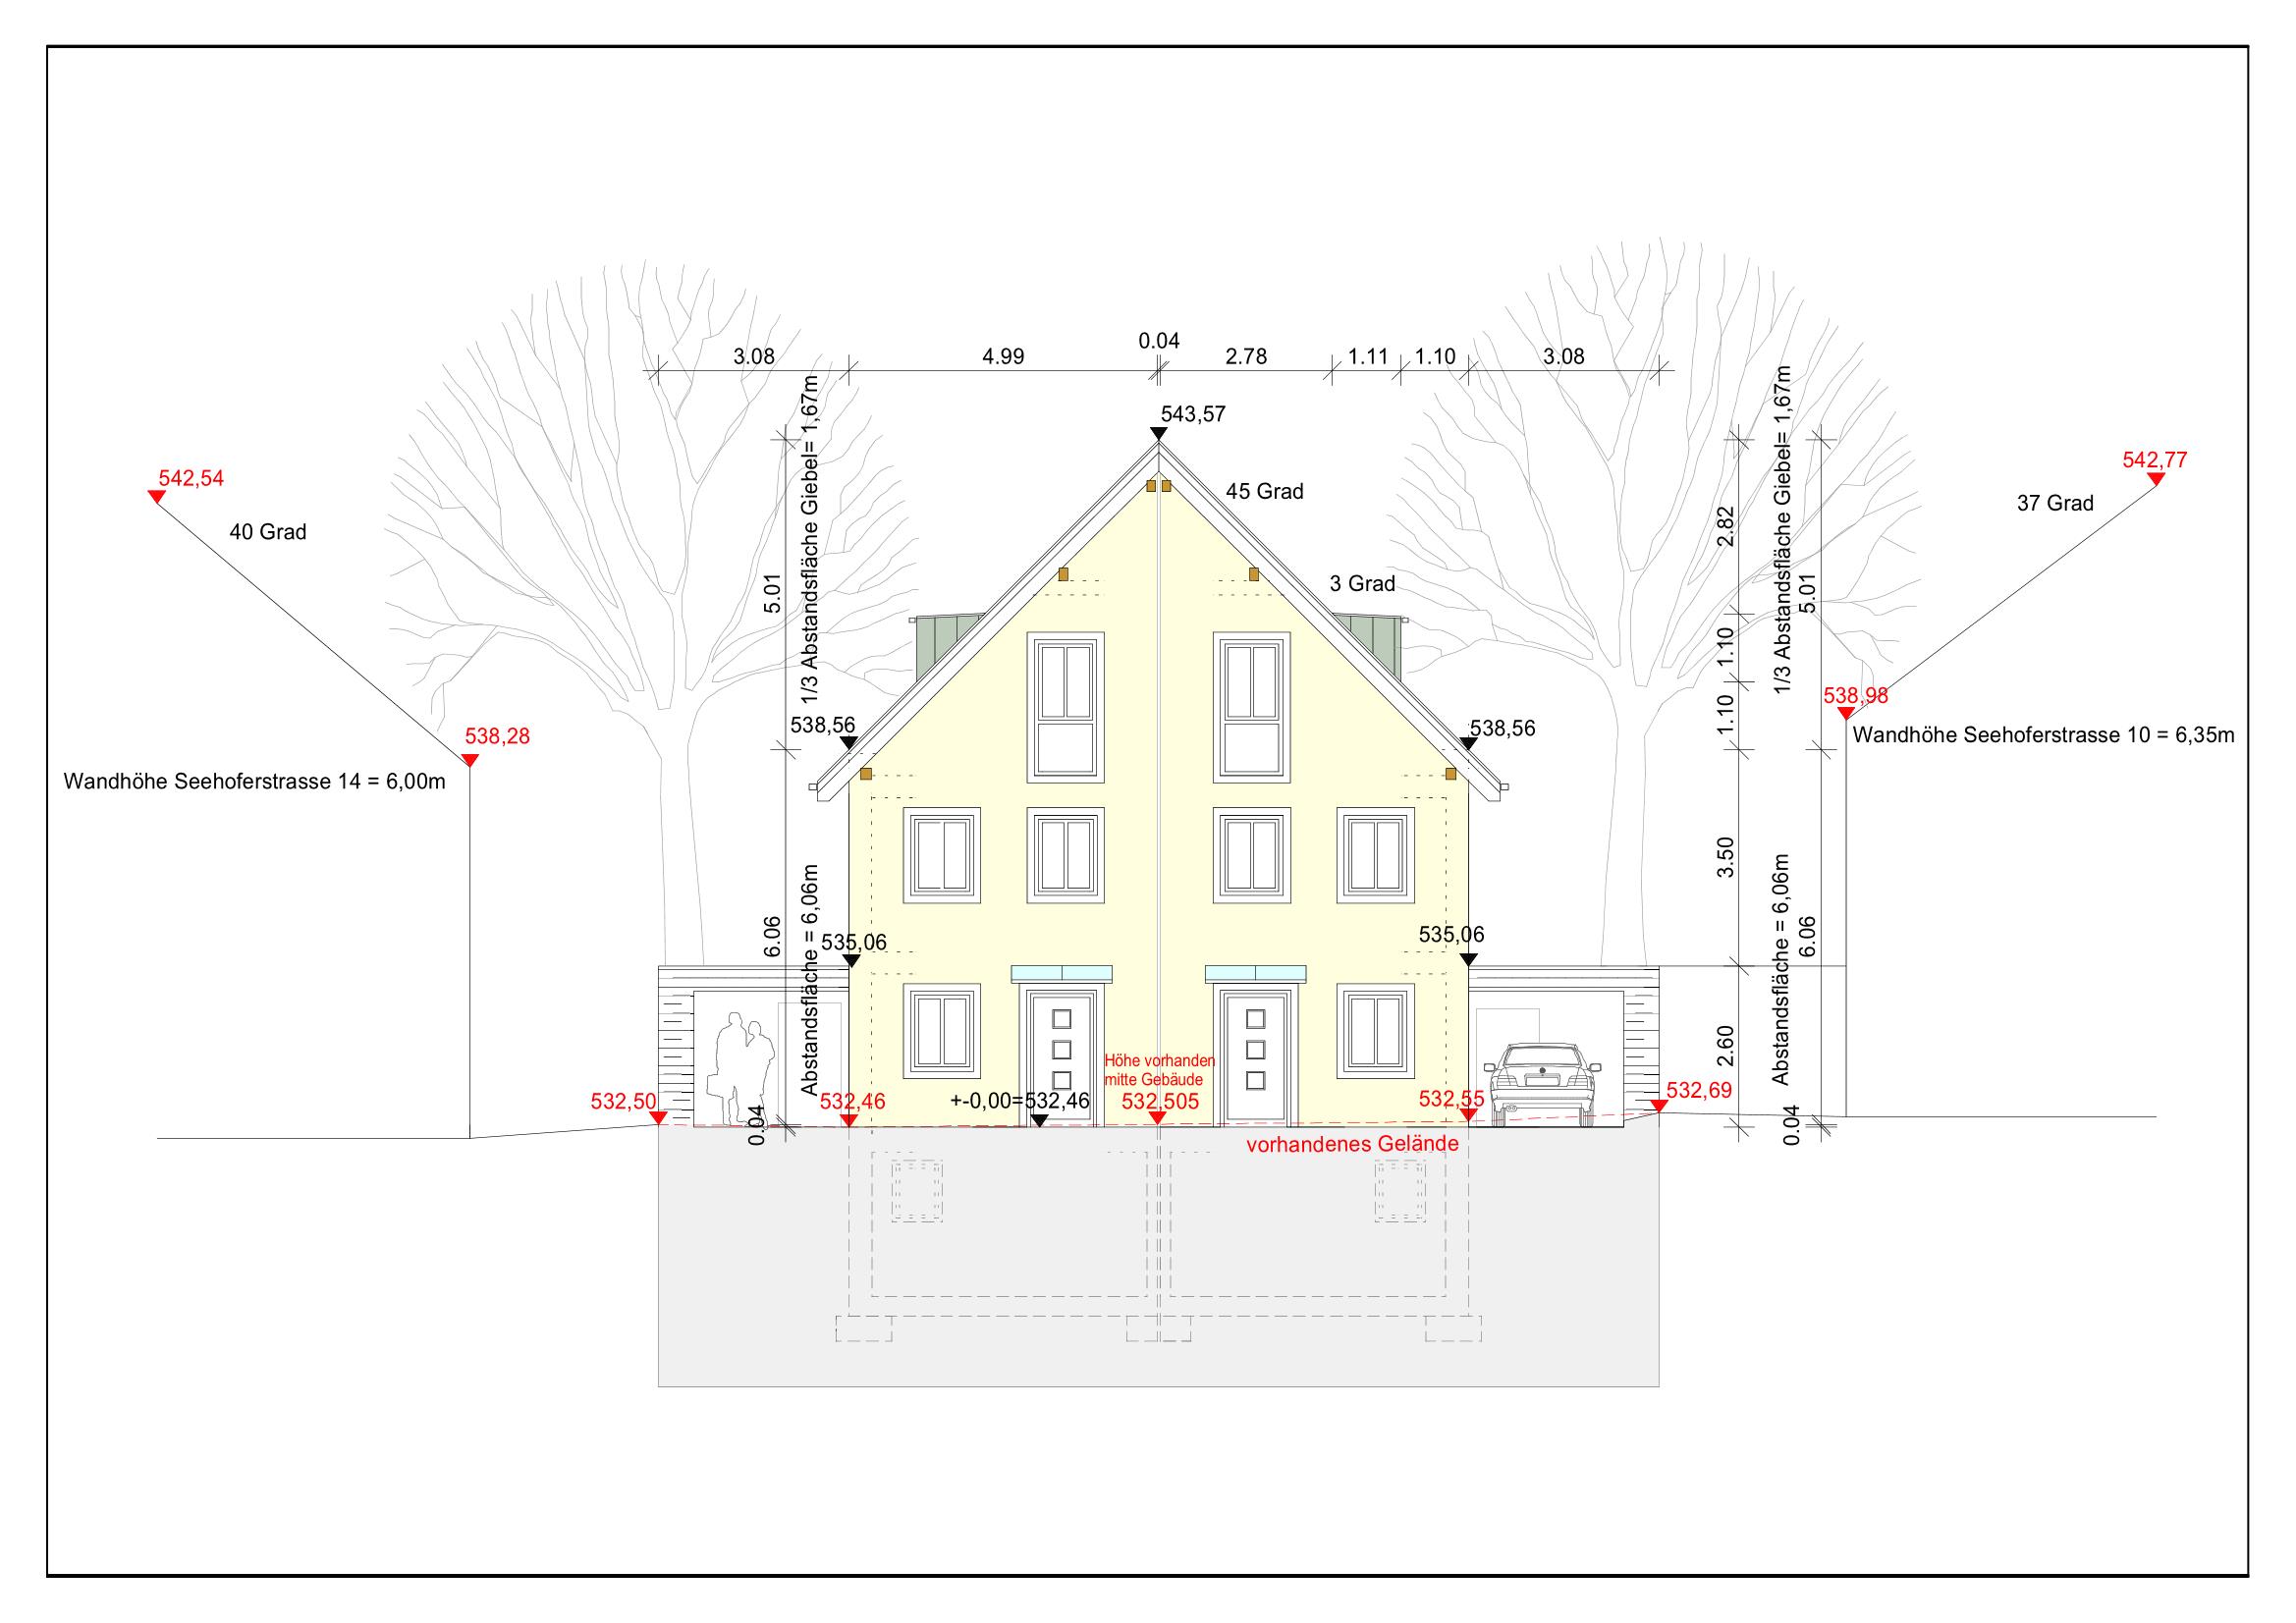 Bild Doppelhaushälften in der Seehoferstrasse in München, Referenz Projekt für Kurt Holley, Dipl. Ing. Architekt, Landschaftsarchitekt und Stadtplaner, BA